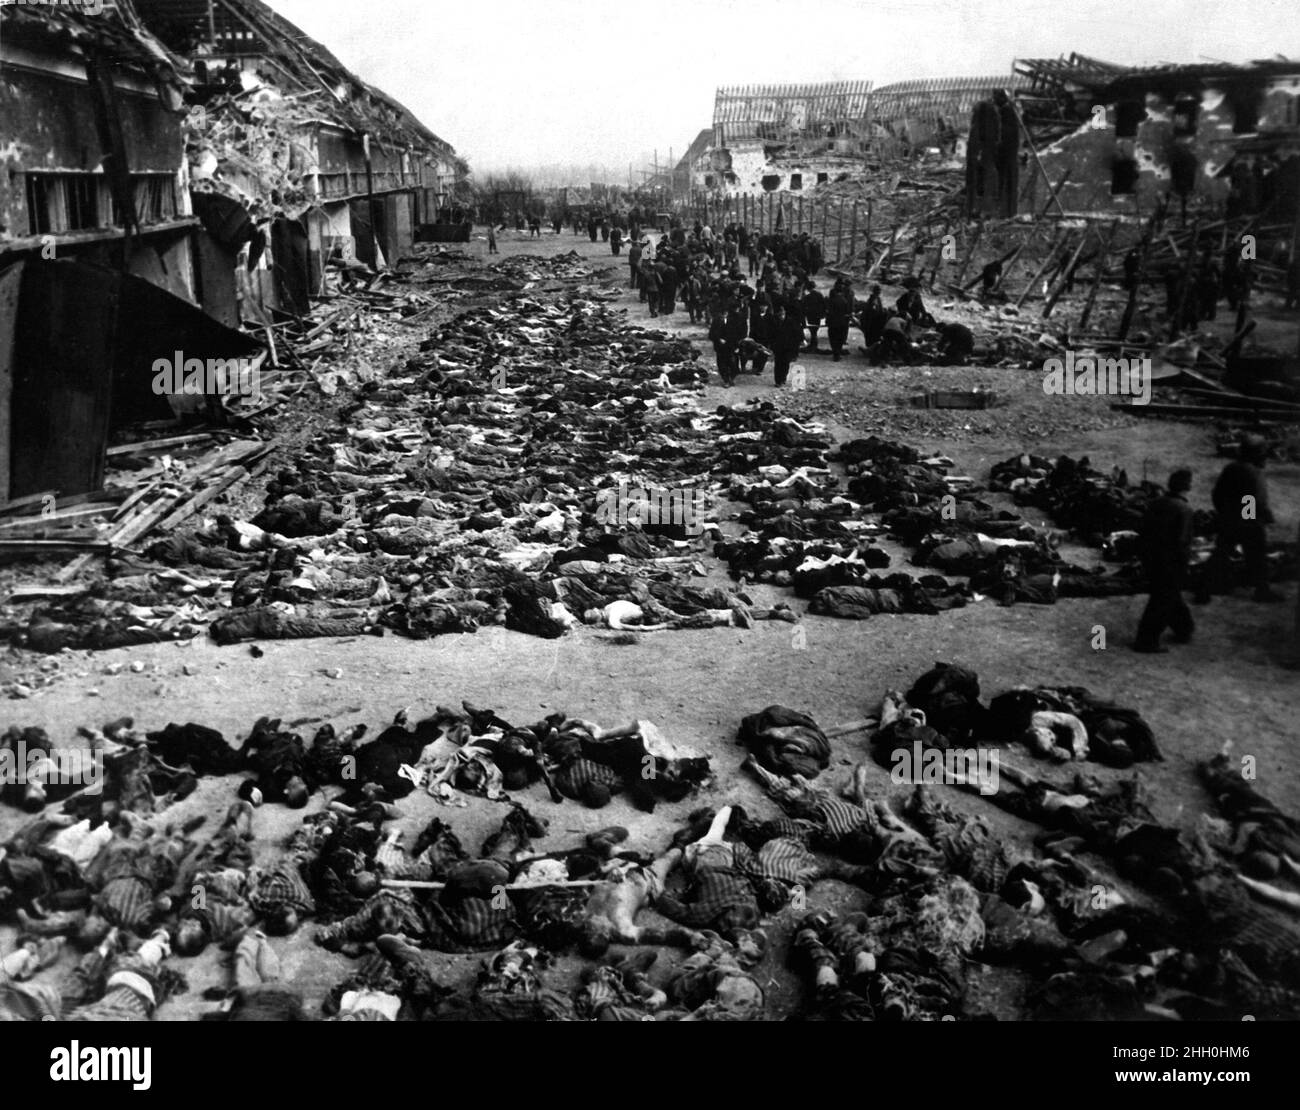 Reihen von Leichen toter Häftlinge füllen den Hof des Lagers Nordhausen, eines Konzentrationslagers der Gestapo. Dieses Foto zeigt weniger als die Hälfte der Leichen der mehrere hundert Häftlinge, die an Hunger starben oder von Gestapo-Männern angeschossen wurden. Deutschland, 12. April 1945. Stockfoto